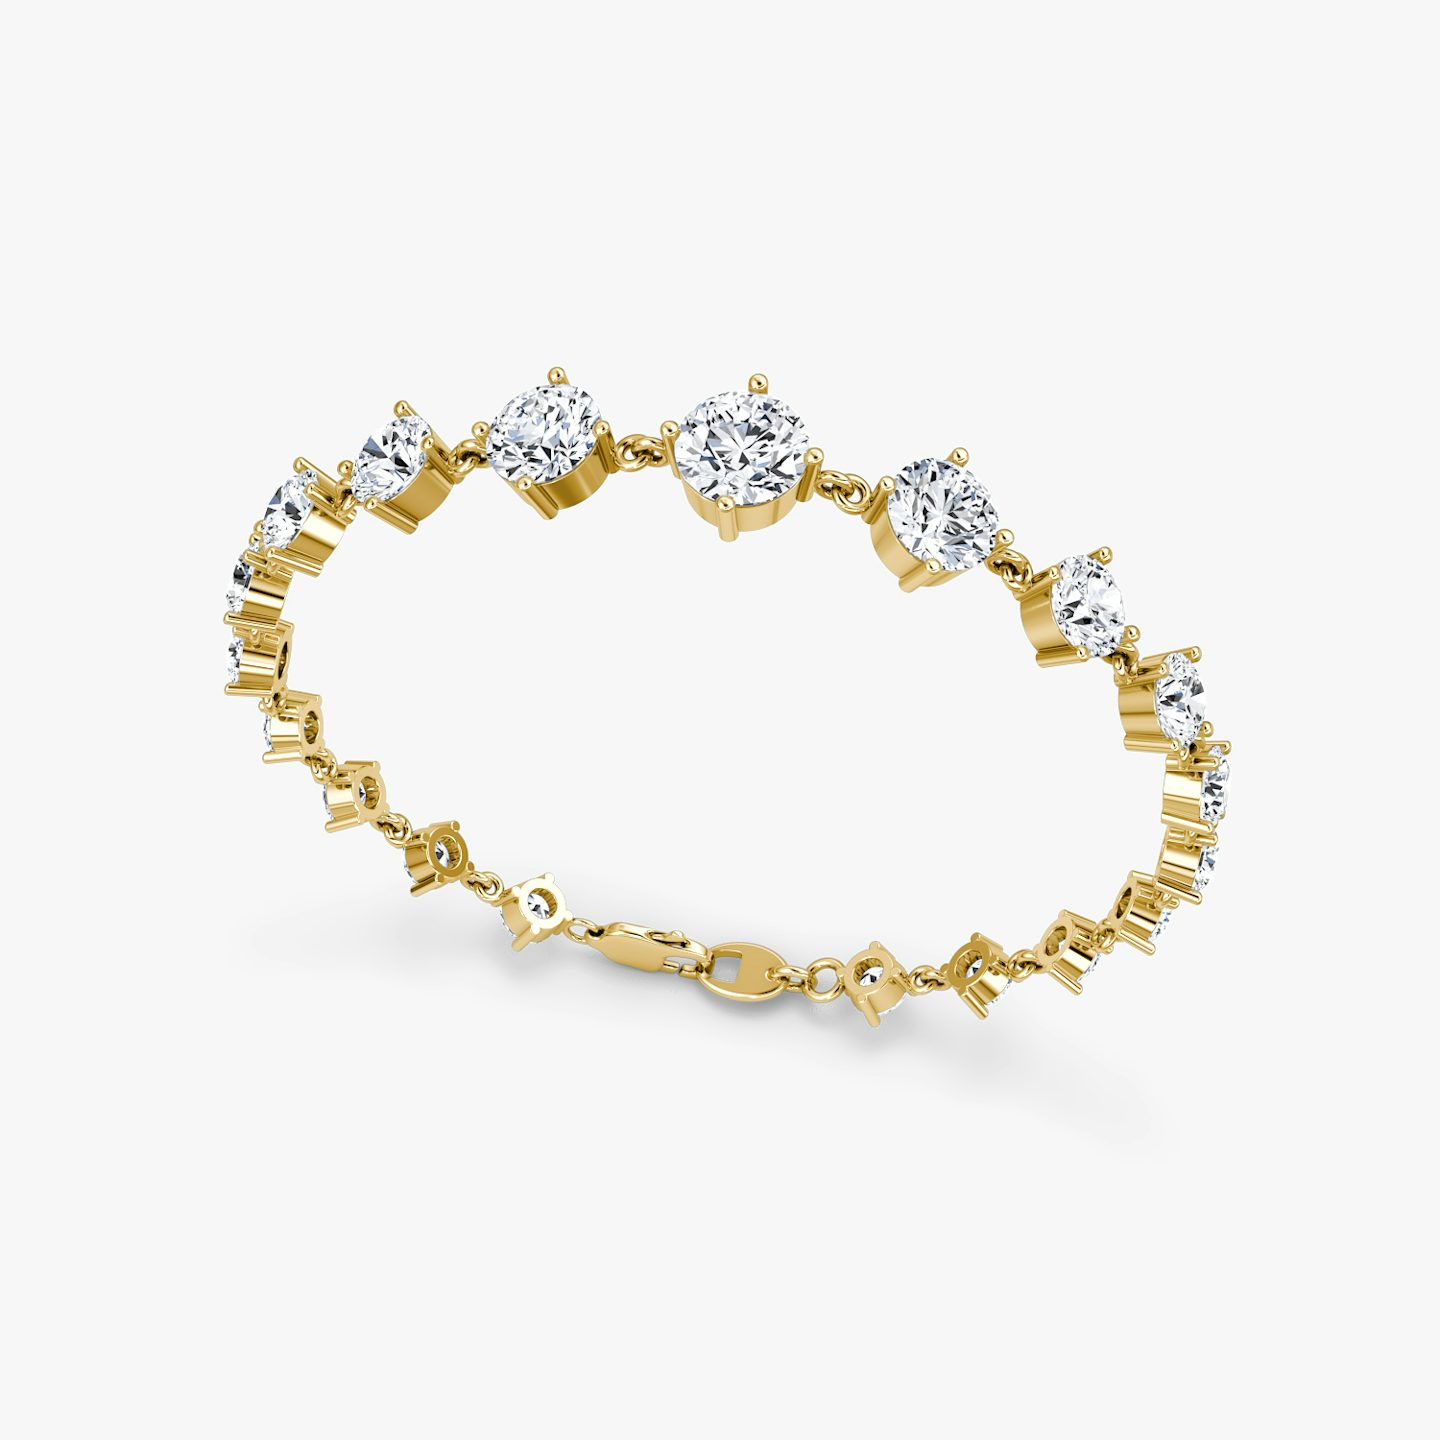 Bracelet Infinity Linked Tennis | Rond Brillant | 14k | Or jaune 18 carats | Poids en carats: 6.60 | Longueur de la chaîne: 6.5